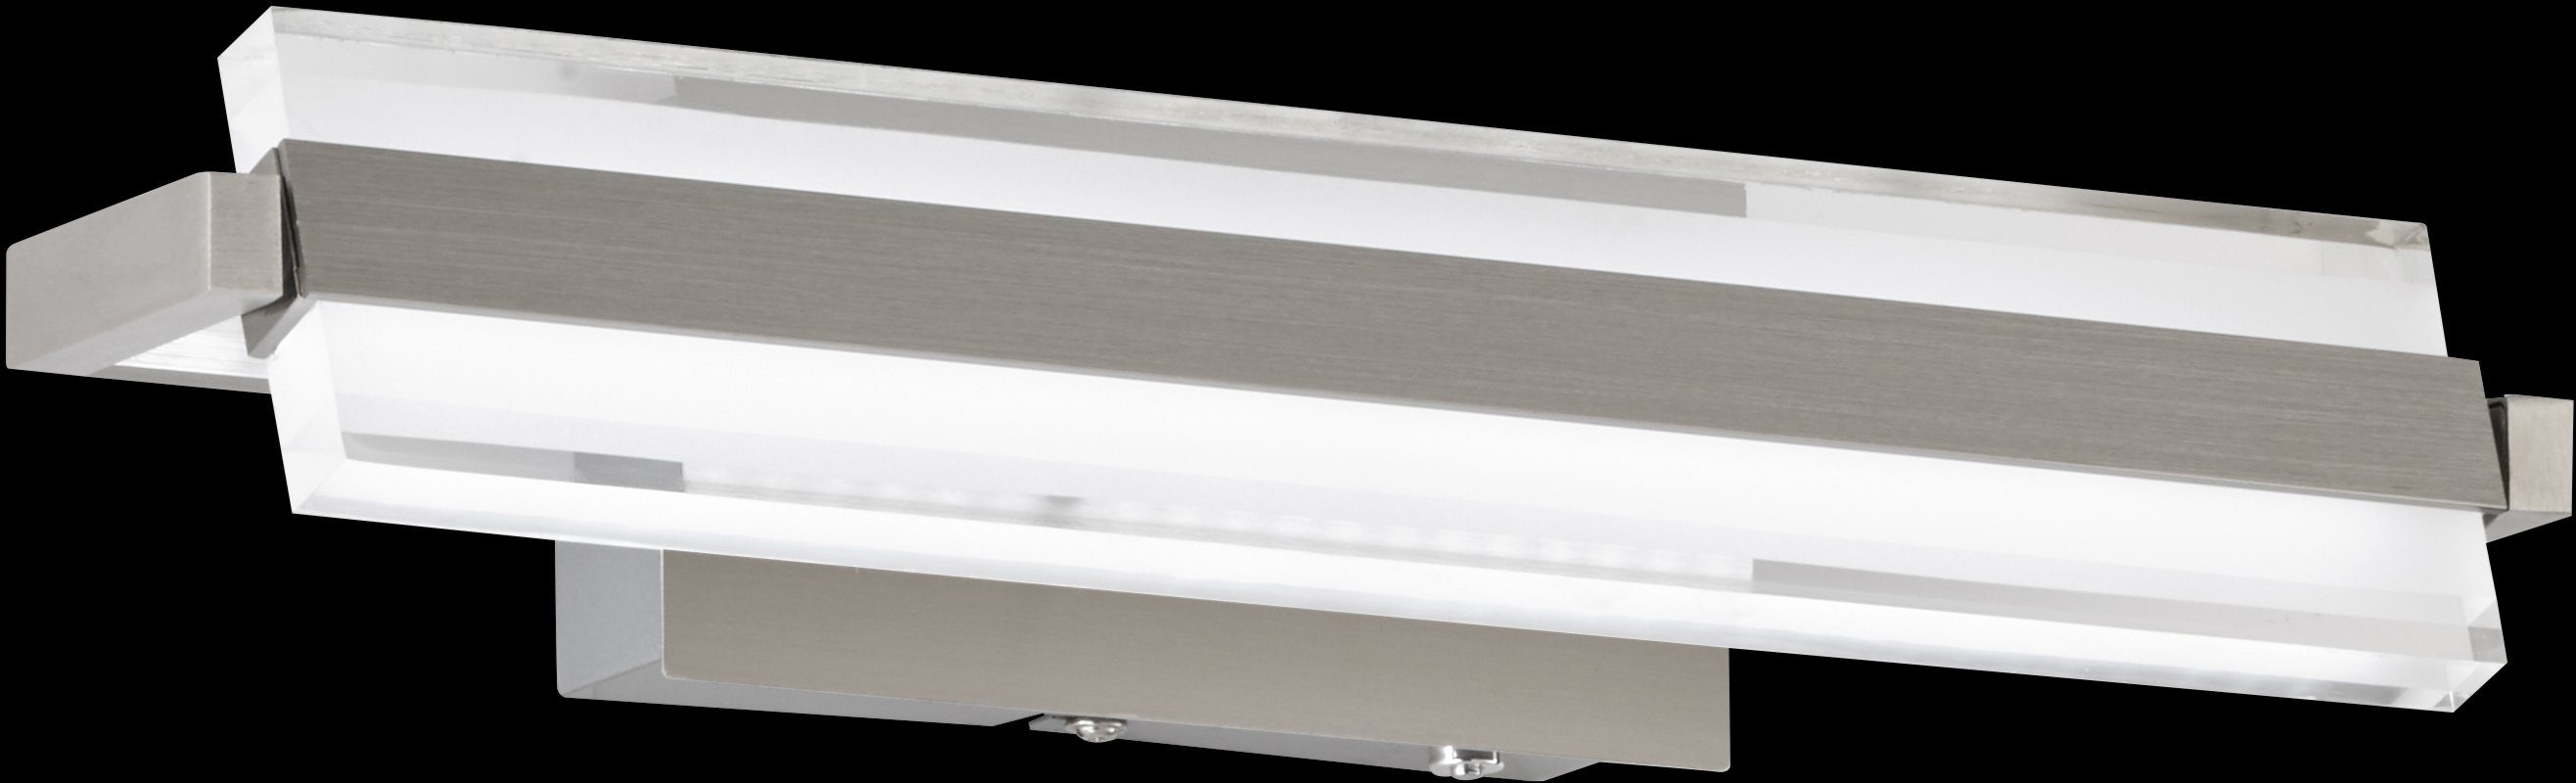 FISCHER & HONSEL LED Neutralweiß, von Technologie LED White 2700/3350/4000K Tunable Warmweiß, Dimmfunktion, Paros, fest Farbtemperaturen integriert, Wandleuchte